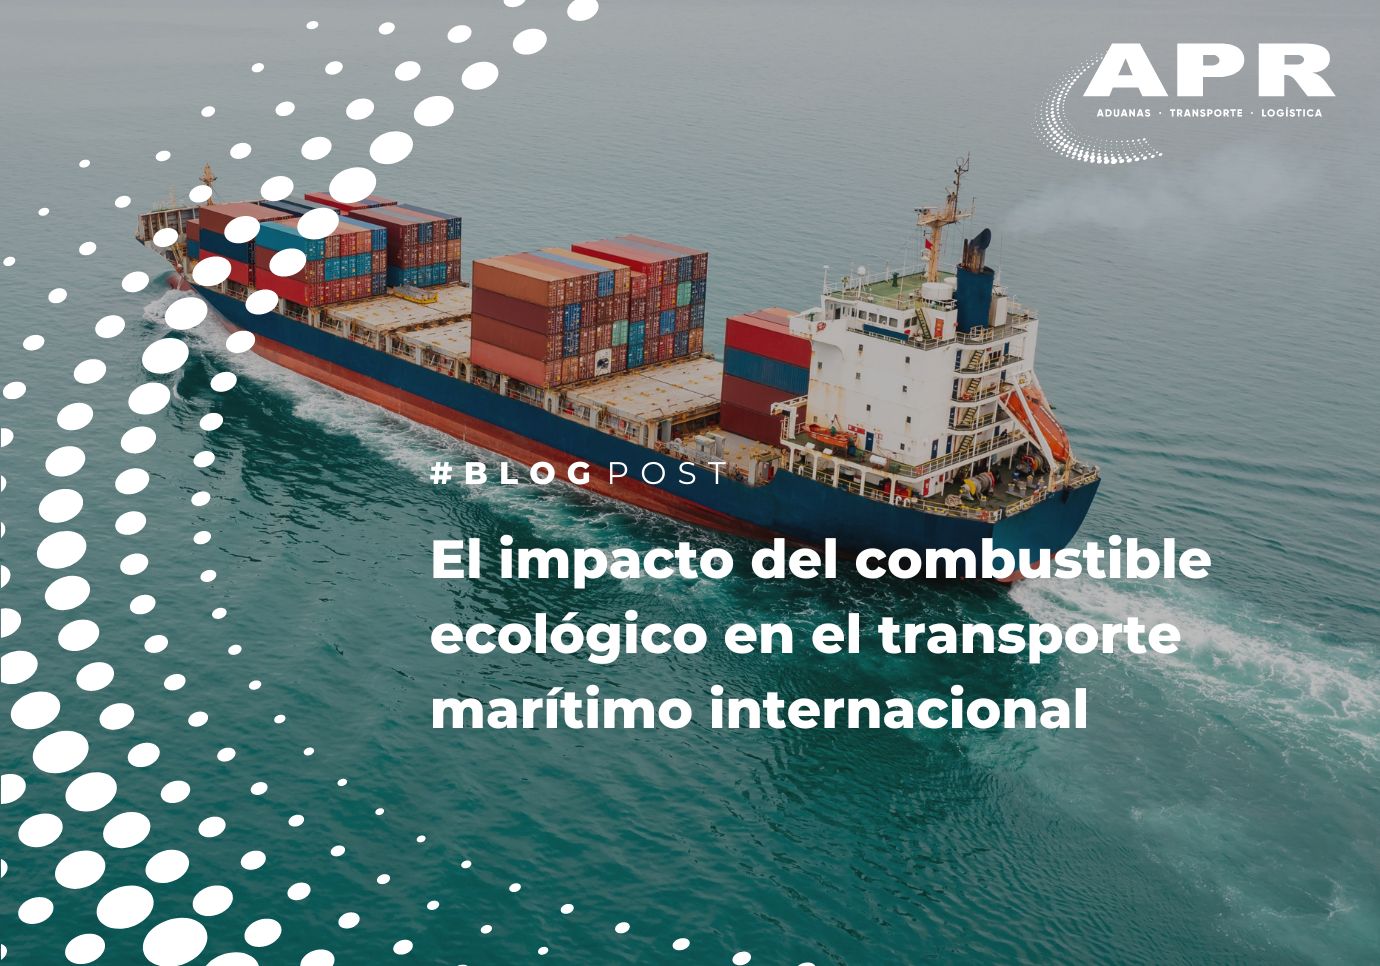 El impacto del combustible ecológico en el transporte marítimo internacional